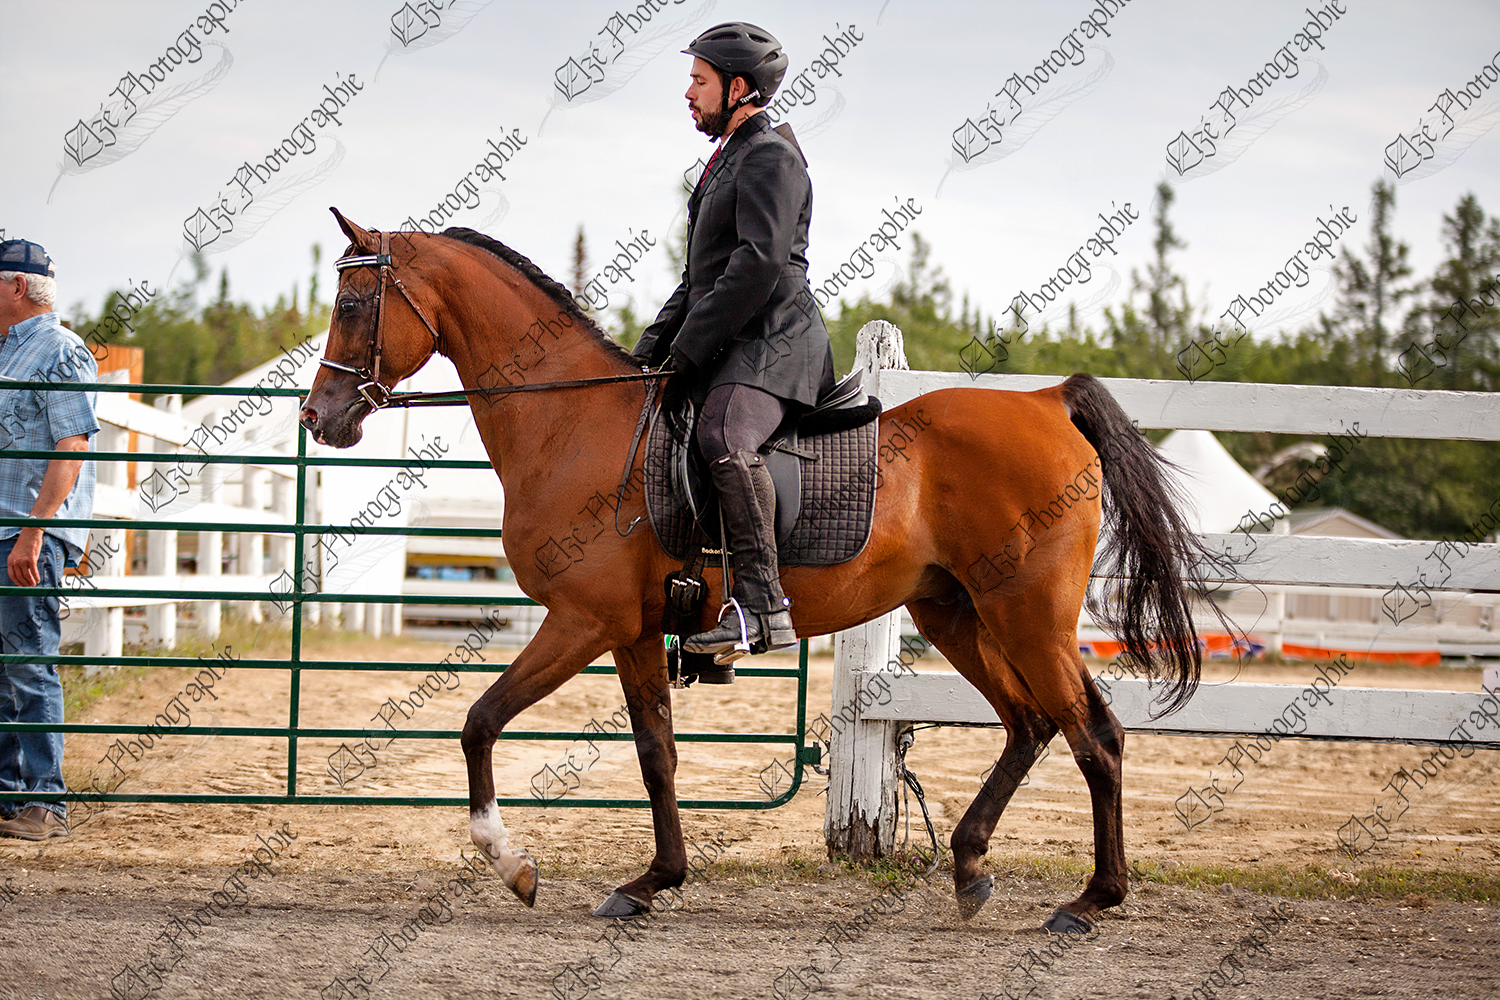 elze_photo_5465_cheval_monte_classique_concours_horse_riding